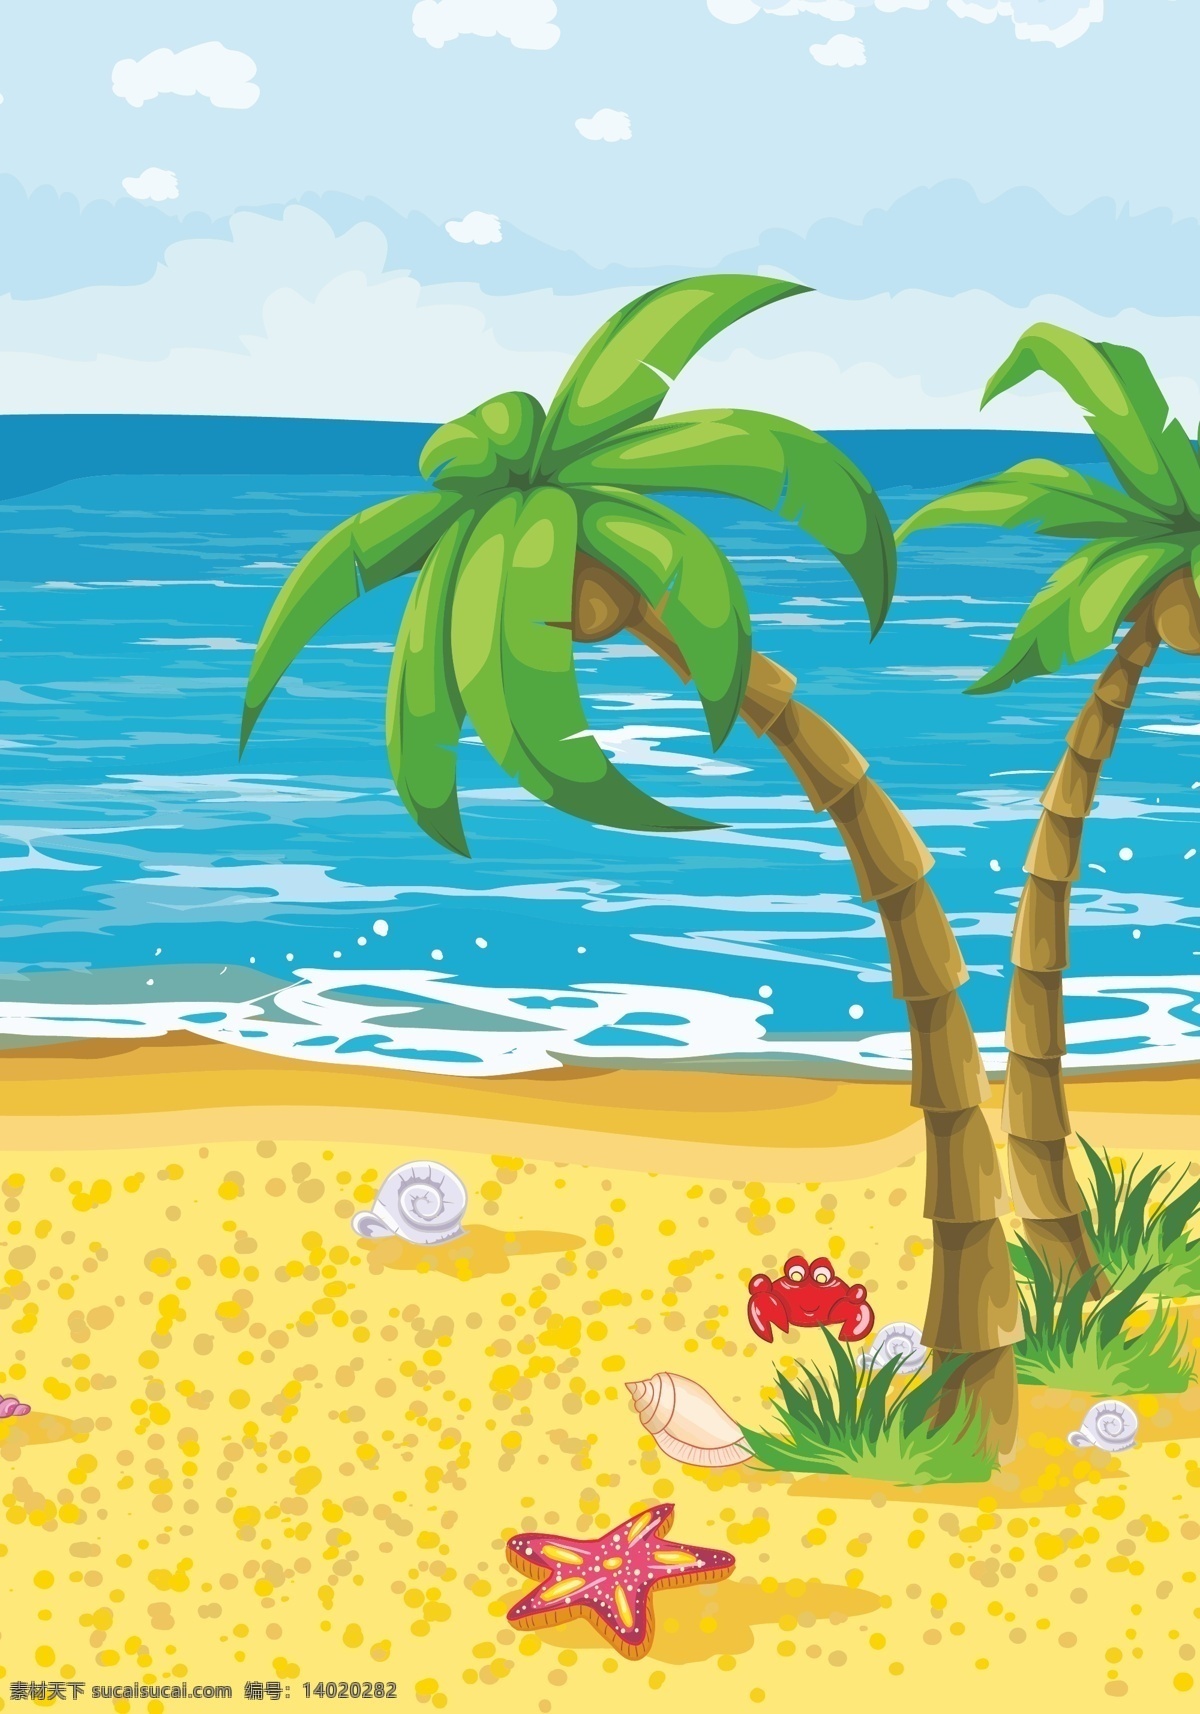 海浪 椰树 背景 模版 沙滩 户外 矢量背景模版